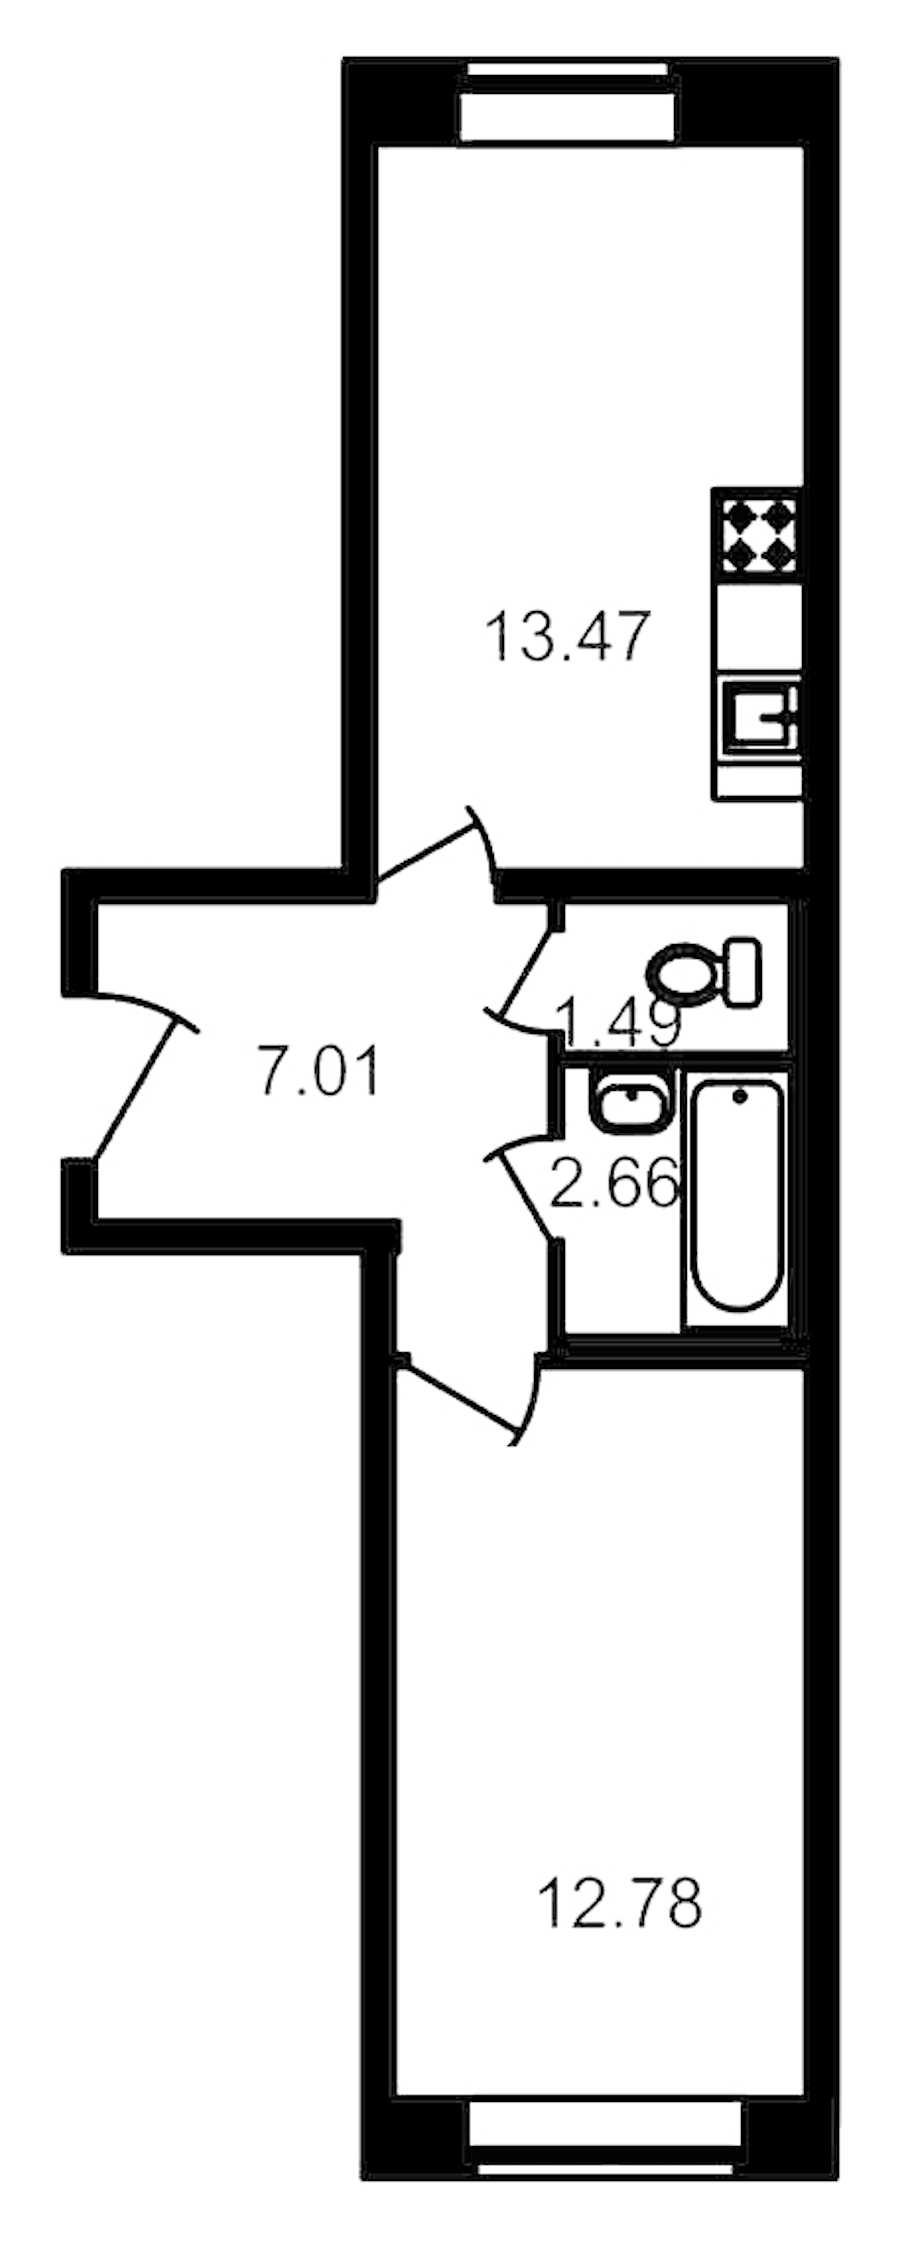 Однокомнатная квартира в ЦДС: площадь 36.76 м2 , этаж: 1 – купить в Санкт-Петербурге